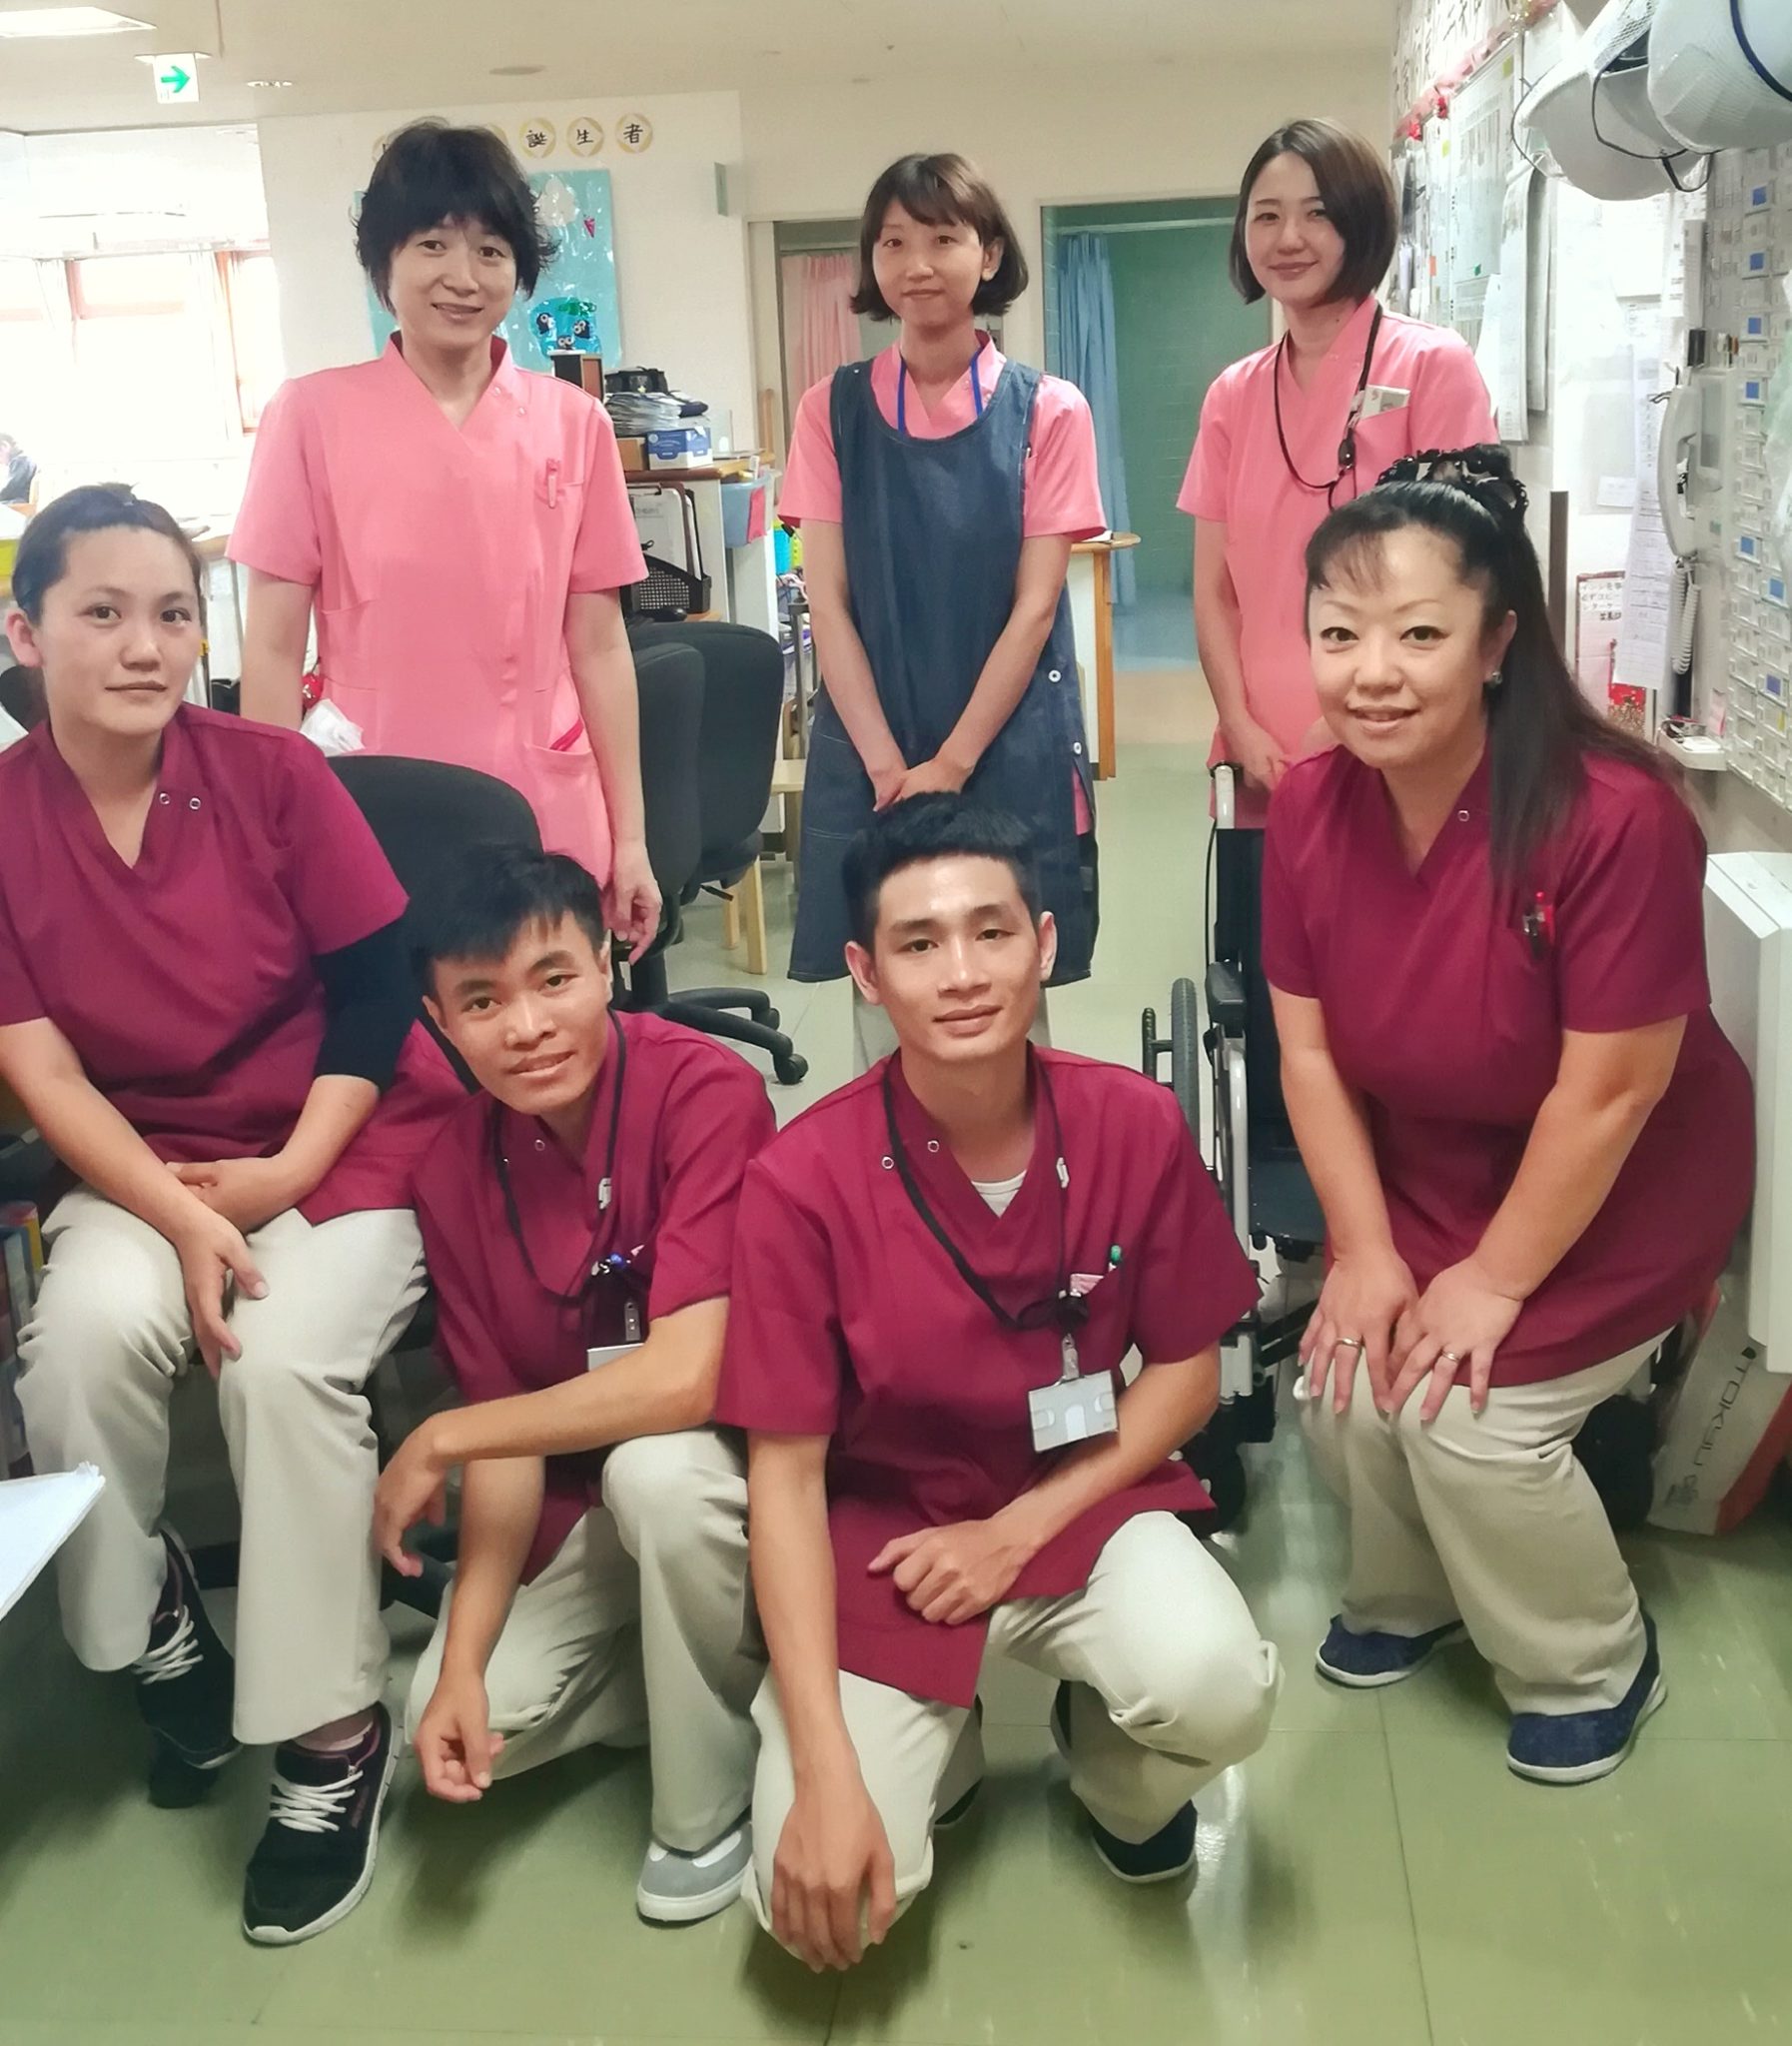 ベトナム人留学生のインターンシップ受入れがスタートしました 横浜市都筑区の医療法人 活人会 内科 小児科 介護老人保健施設など